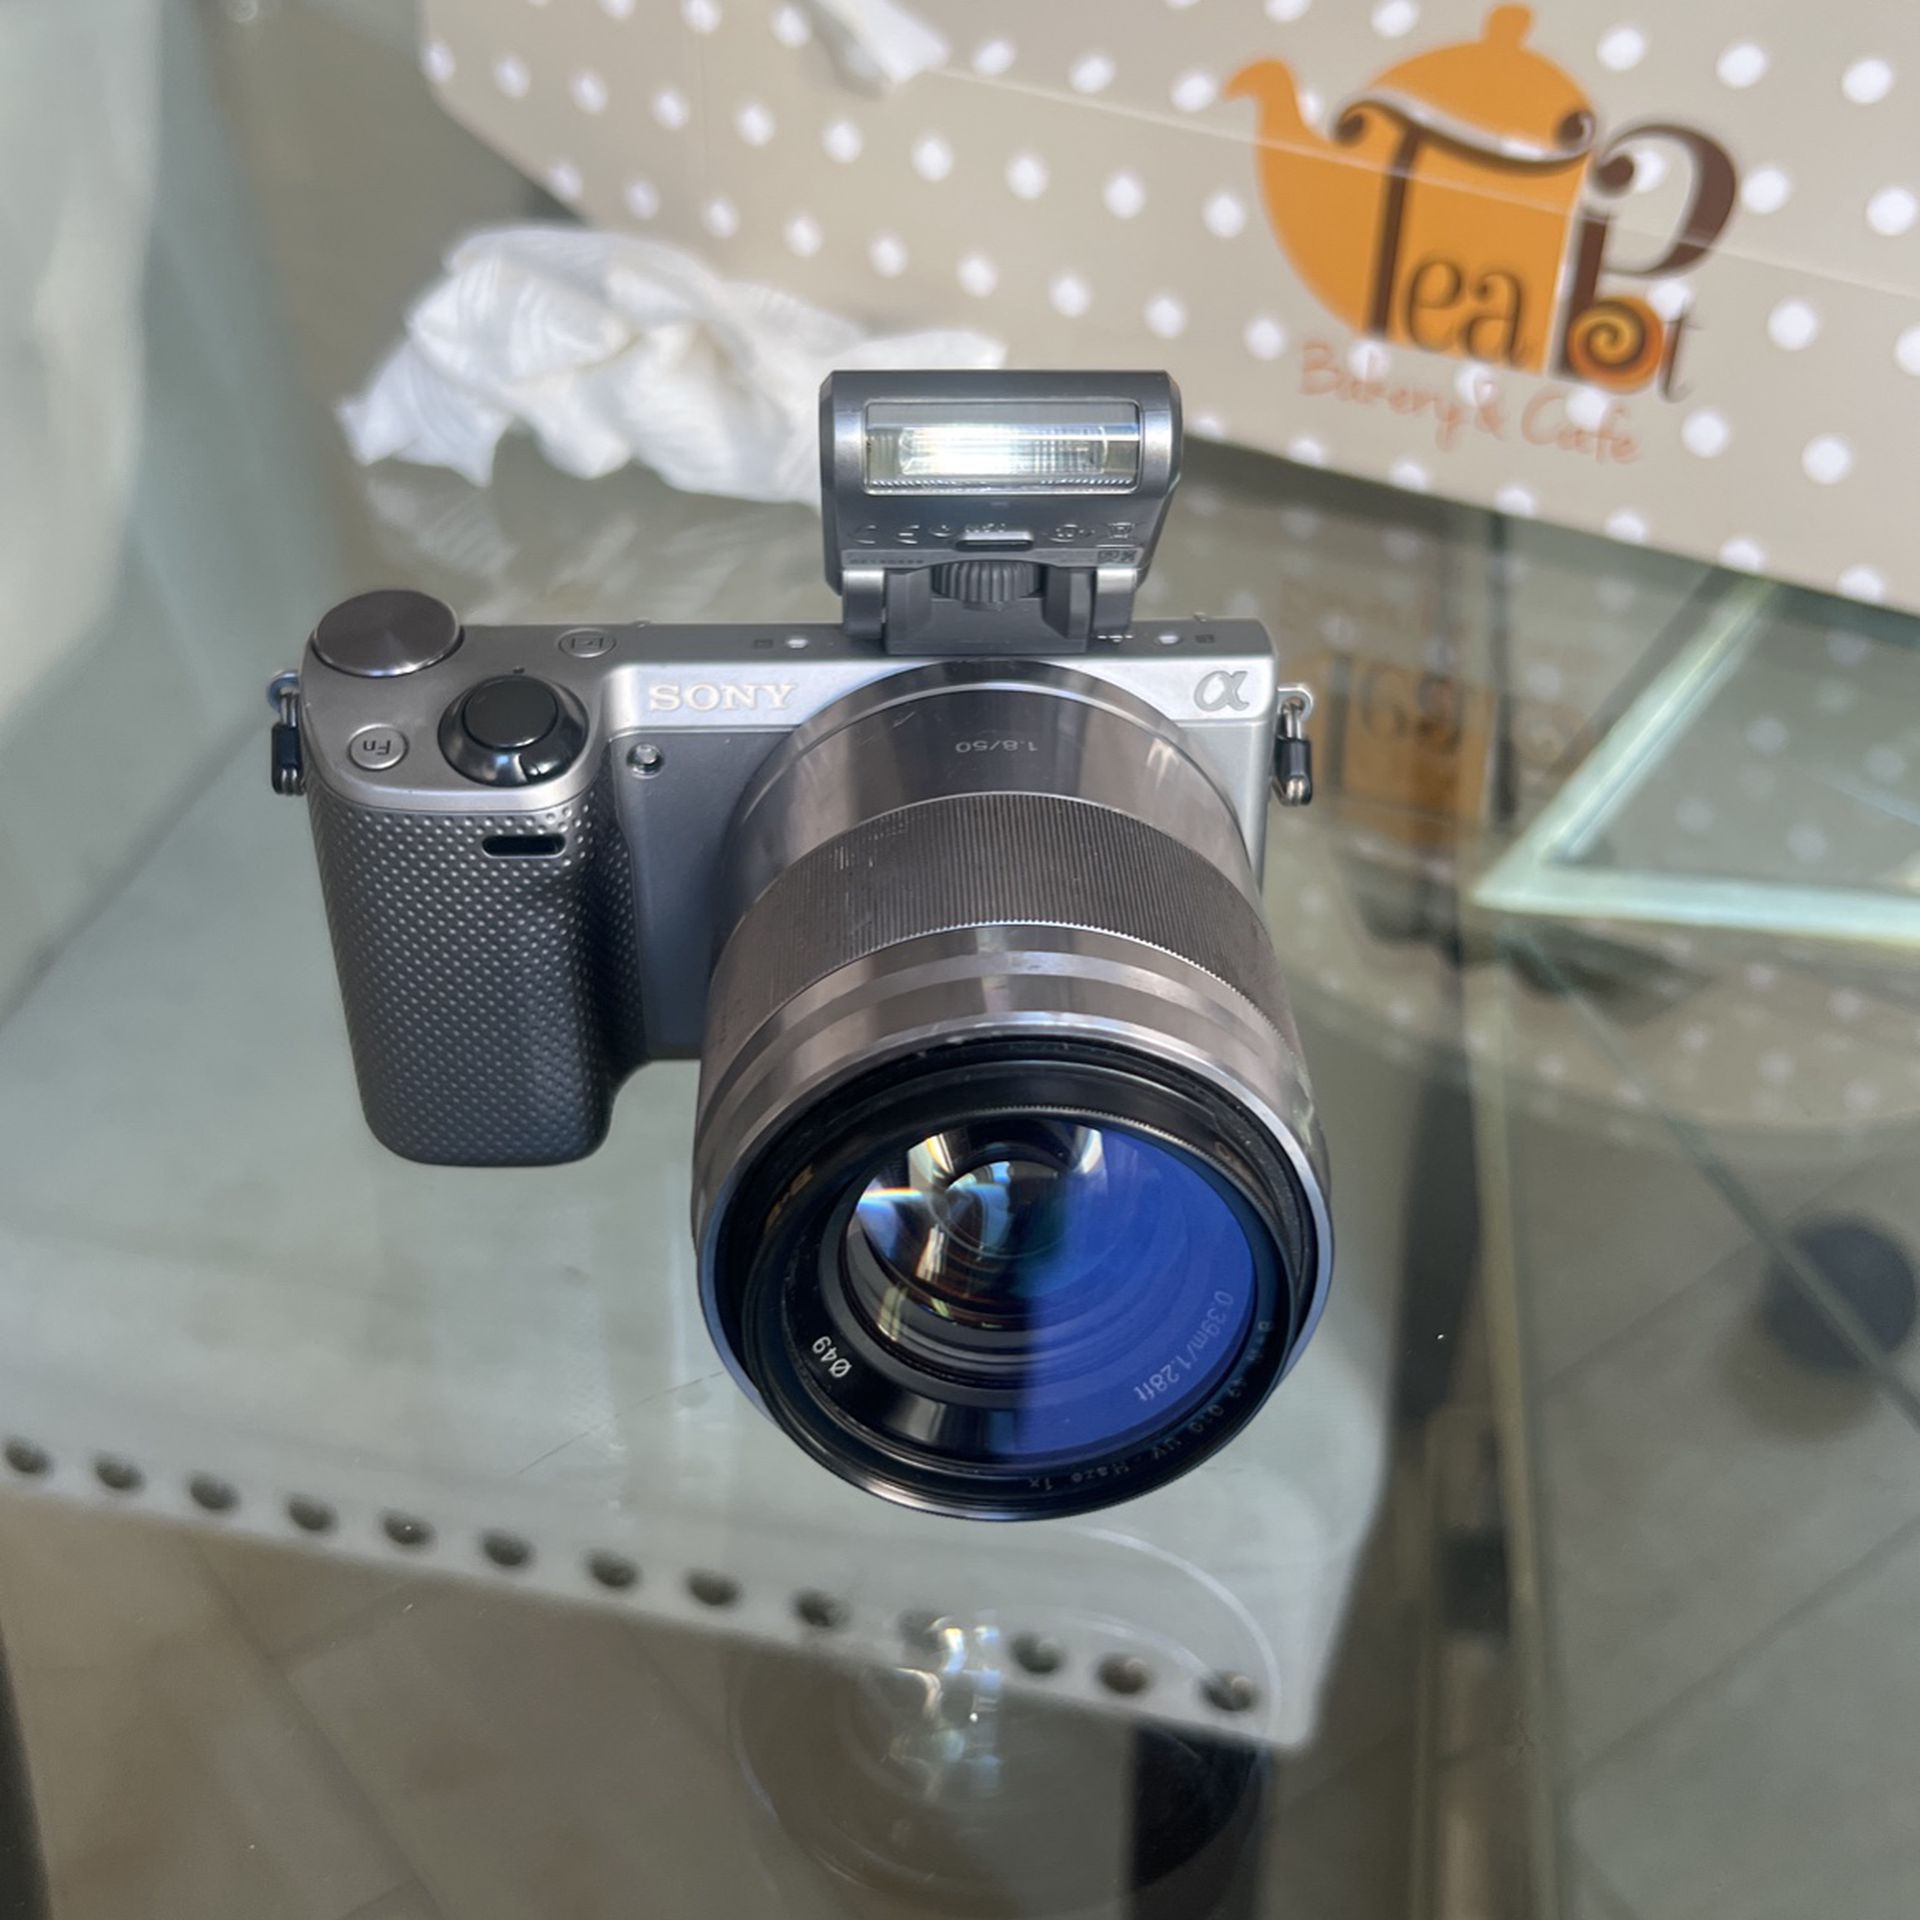 SONY NEX-5r Digital Camera With A 50mm 1.8f Lense 